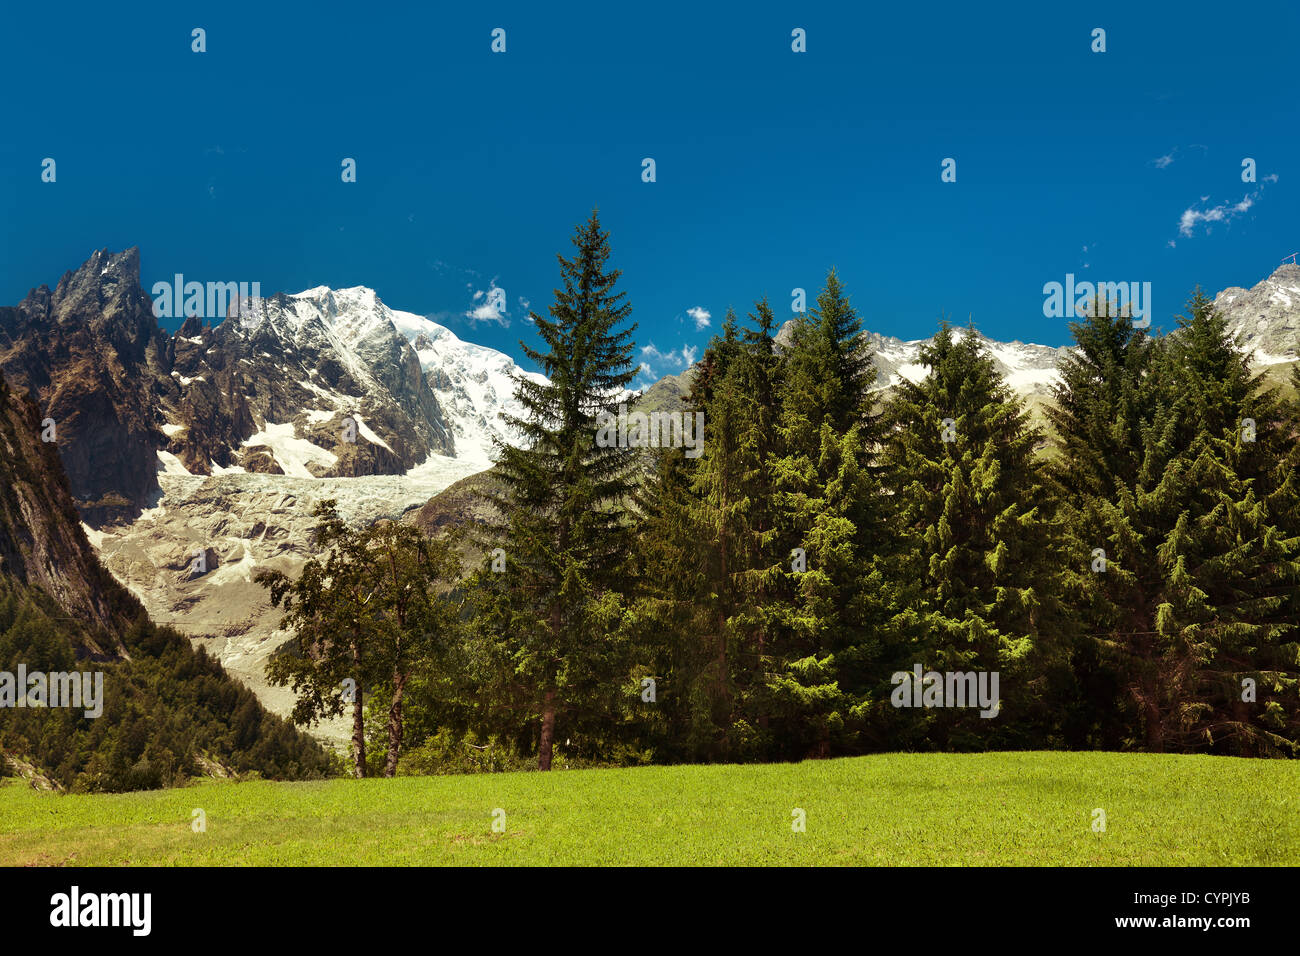 Un beau paysage dans l'Alpage de montagne. Banque D'Images